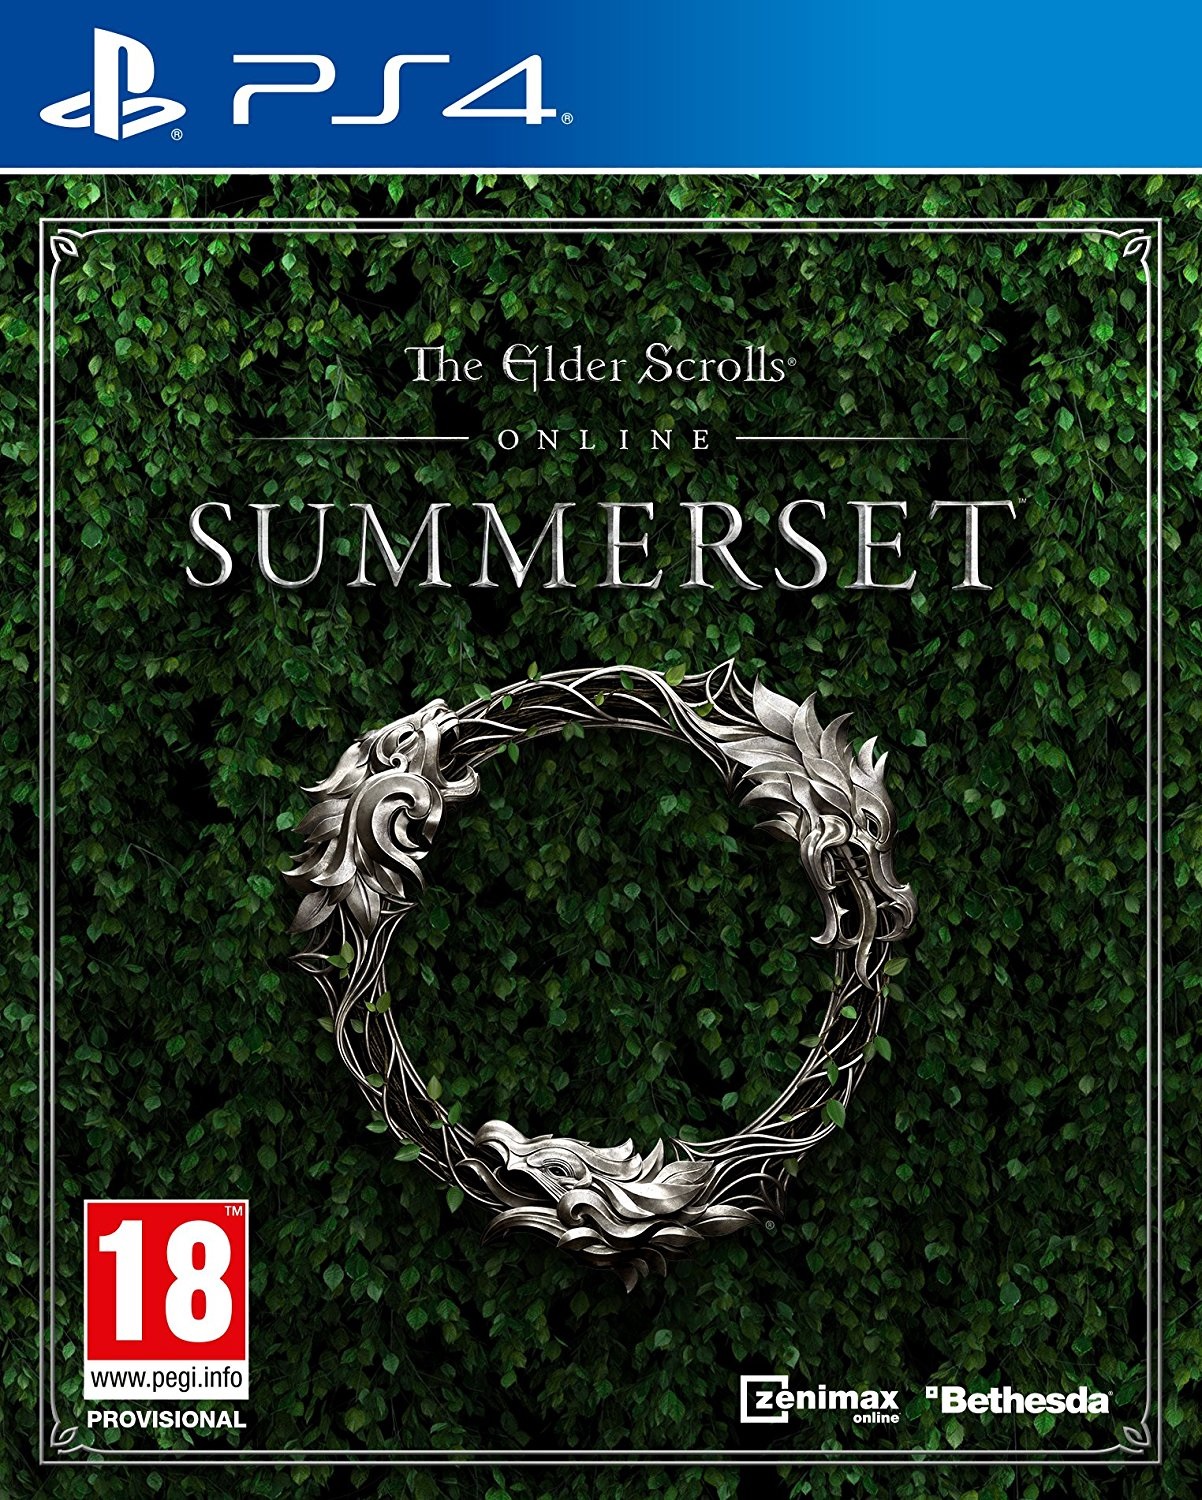 The Elder Scrolls Online Summerset - PS4